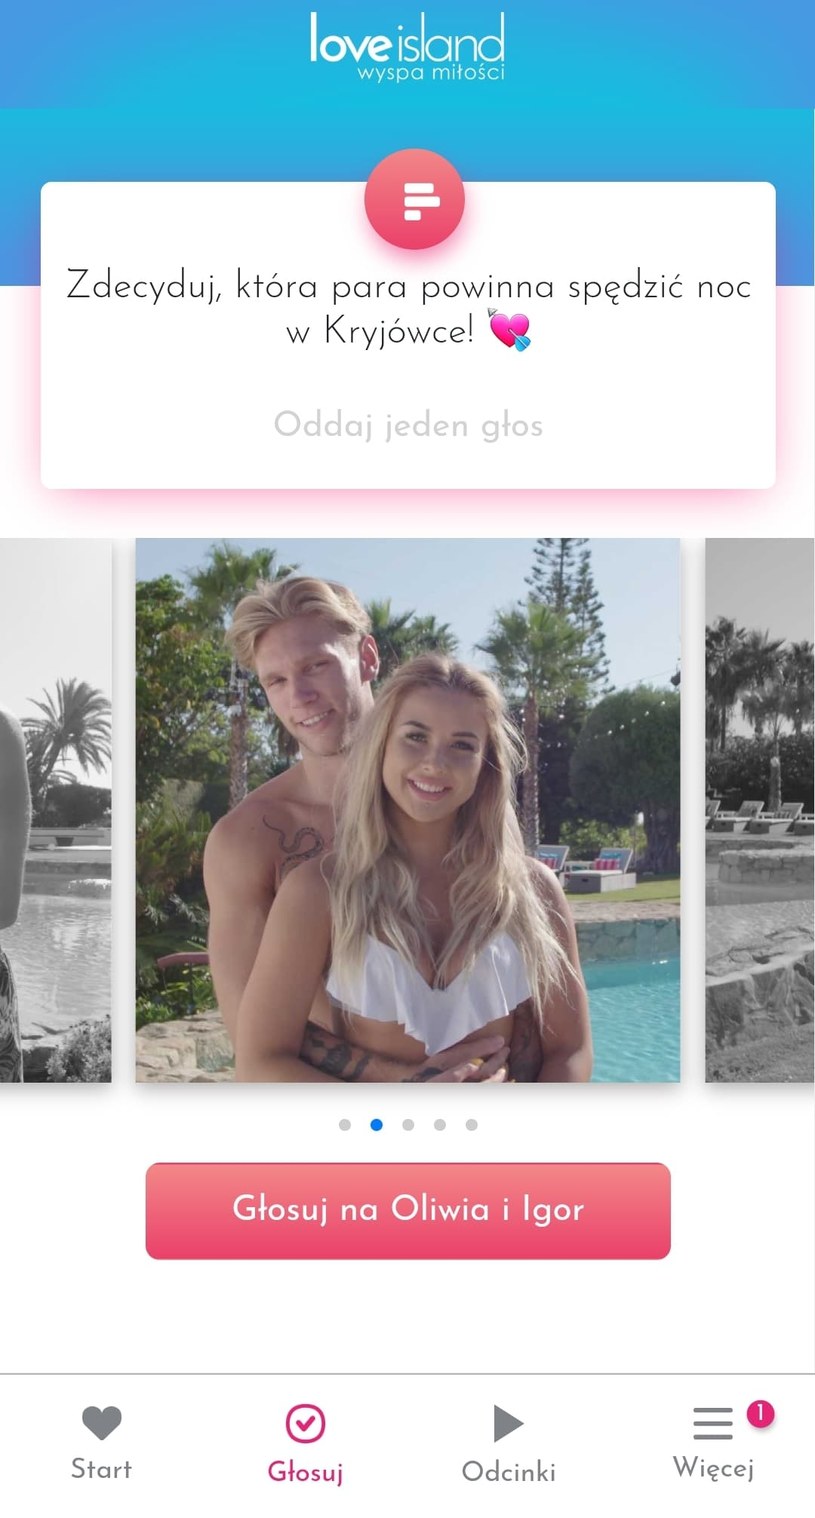 Głosuj w aplikacji "Wyspa miłości" dla pary, która spędzi noc w ukryciu!  / Polsat / Ipla